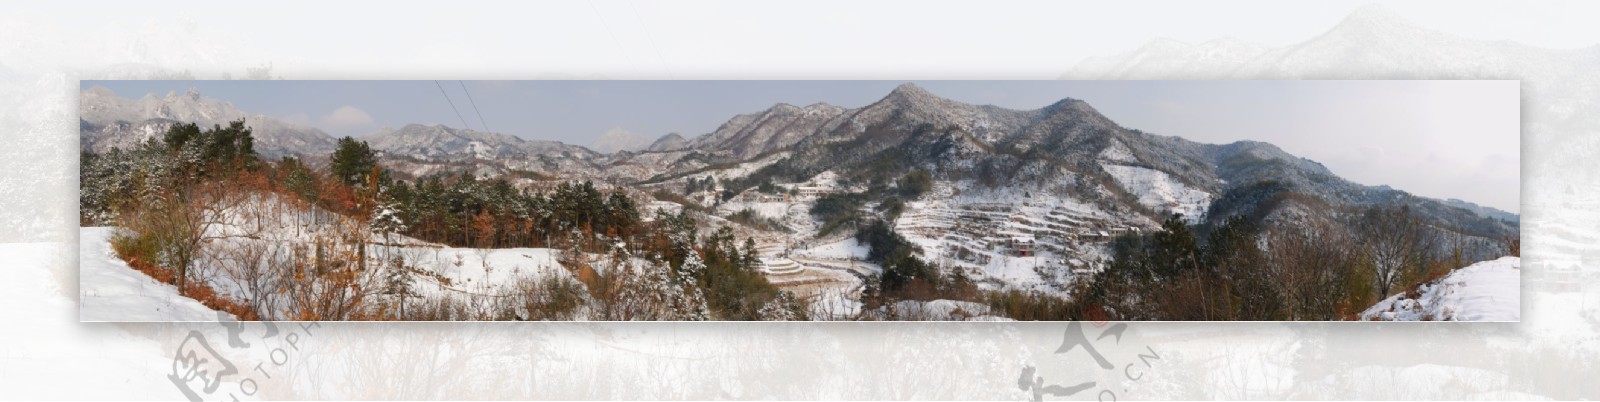 安徽金寨新安长岭雪景图片